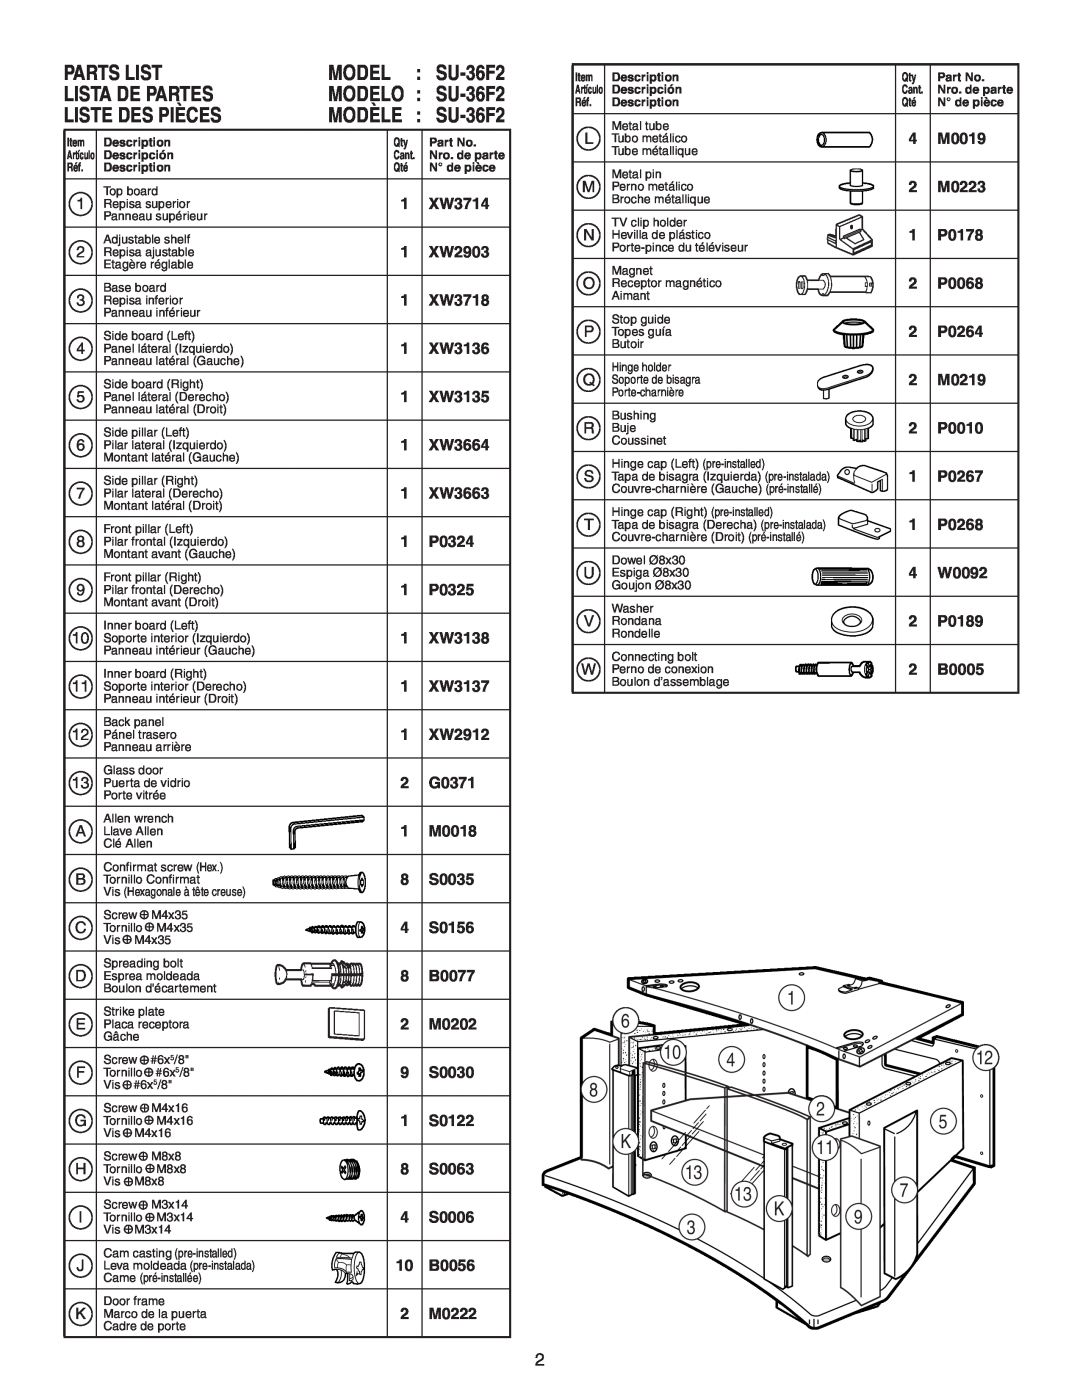 Sony manual Parts List, Model, Lista De Partes, Liste Des Pièces, 6 10 8 K 13 13 K 3, MODELO : SU-36F2, MODÈLE SU-36F2 